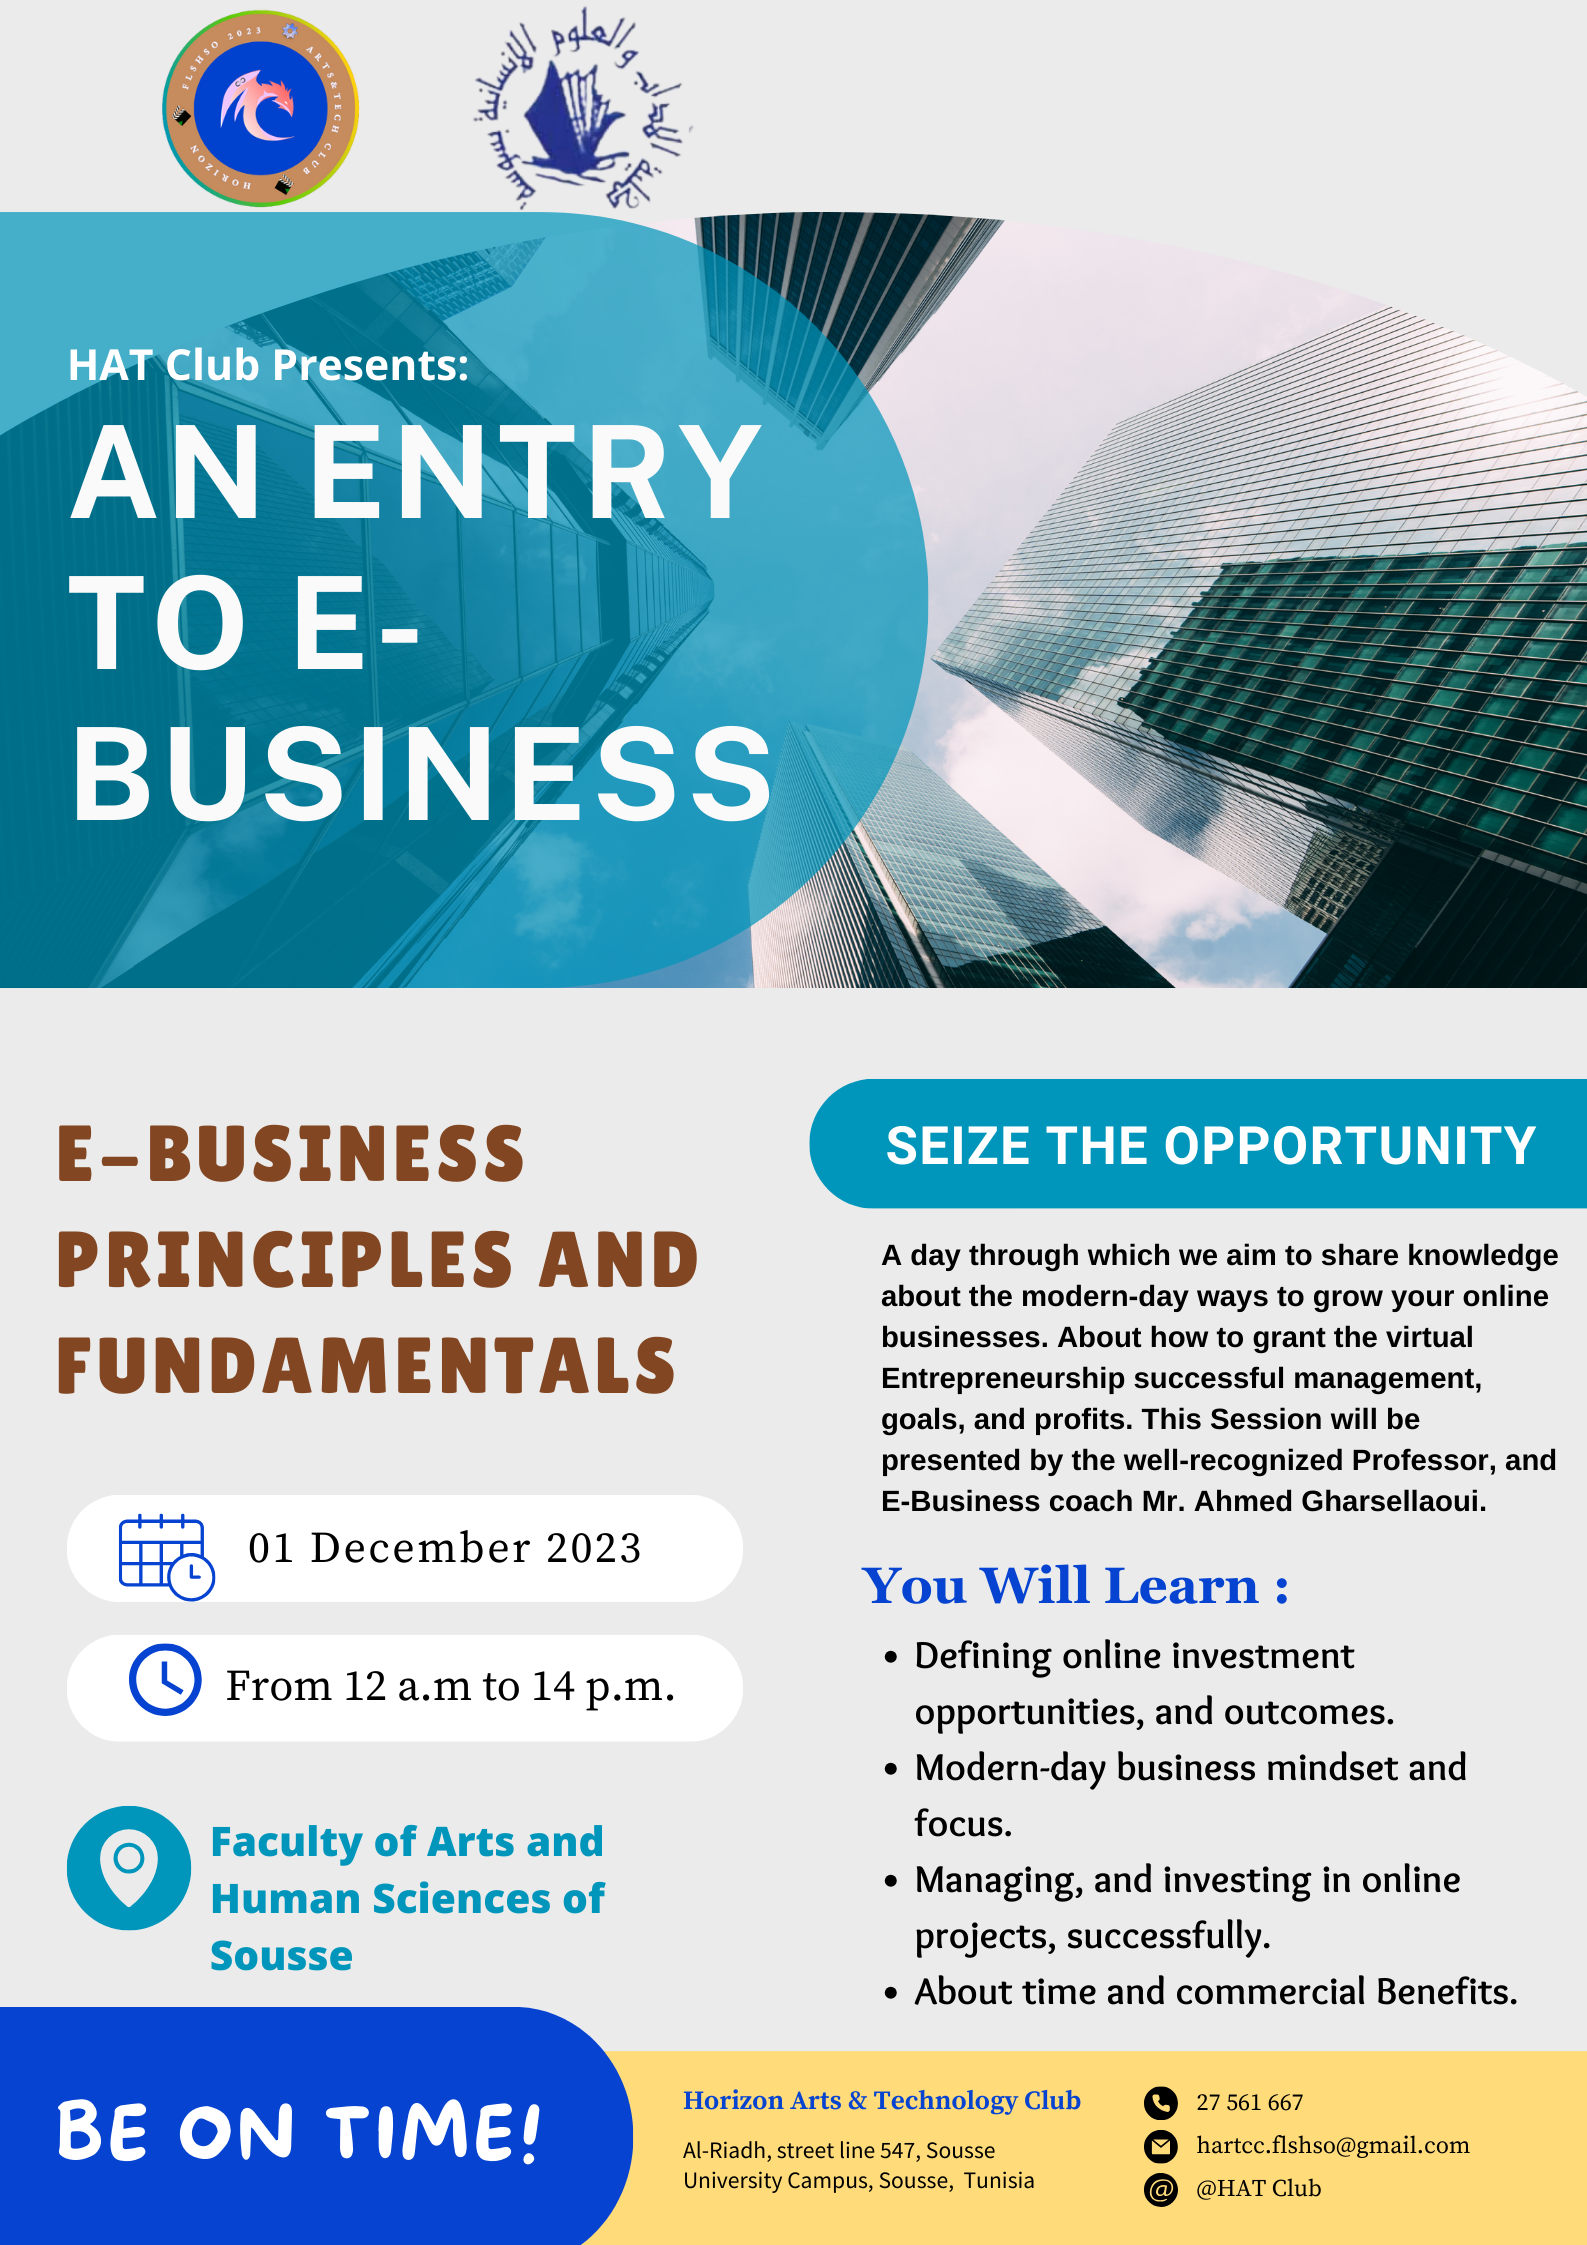 E-BUSINESS PRINCIPLES AND FUNDAMENTALS